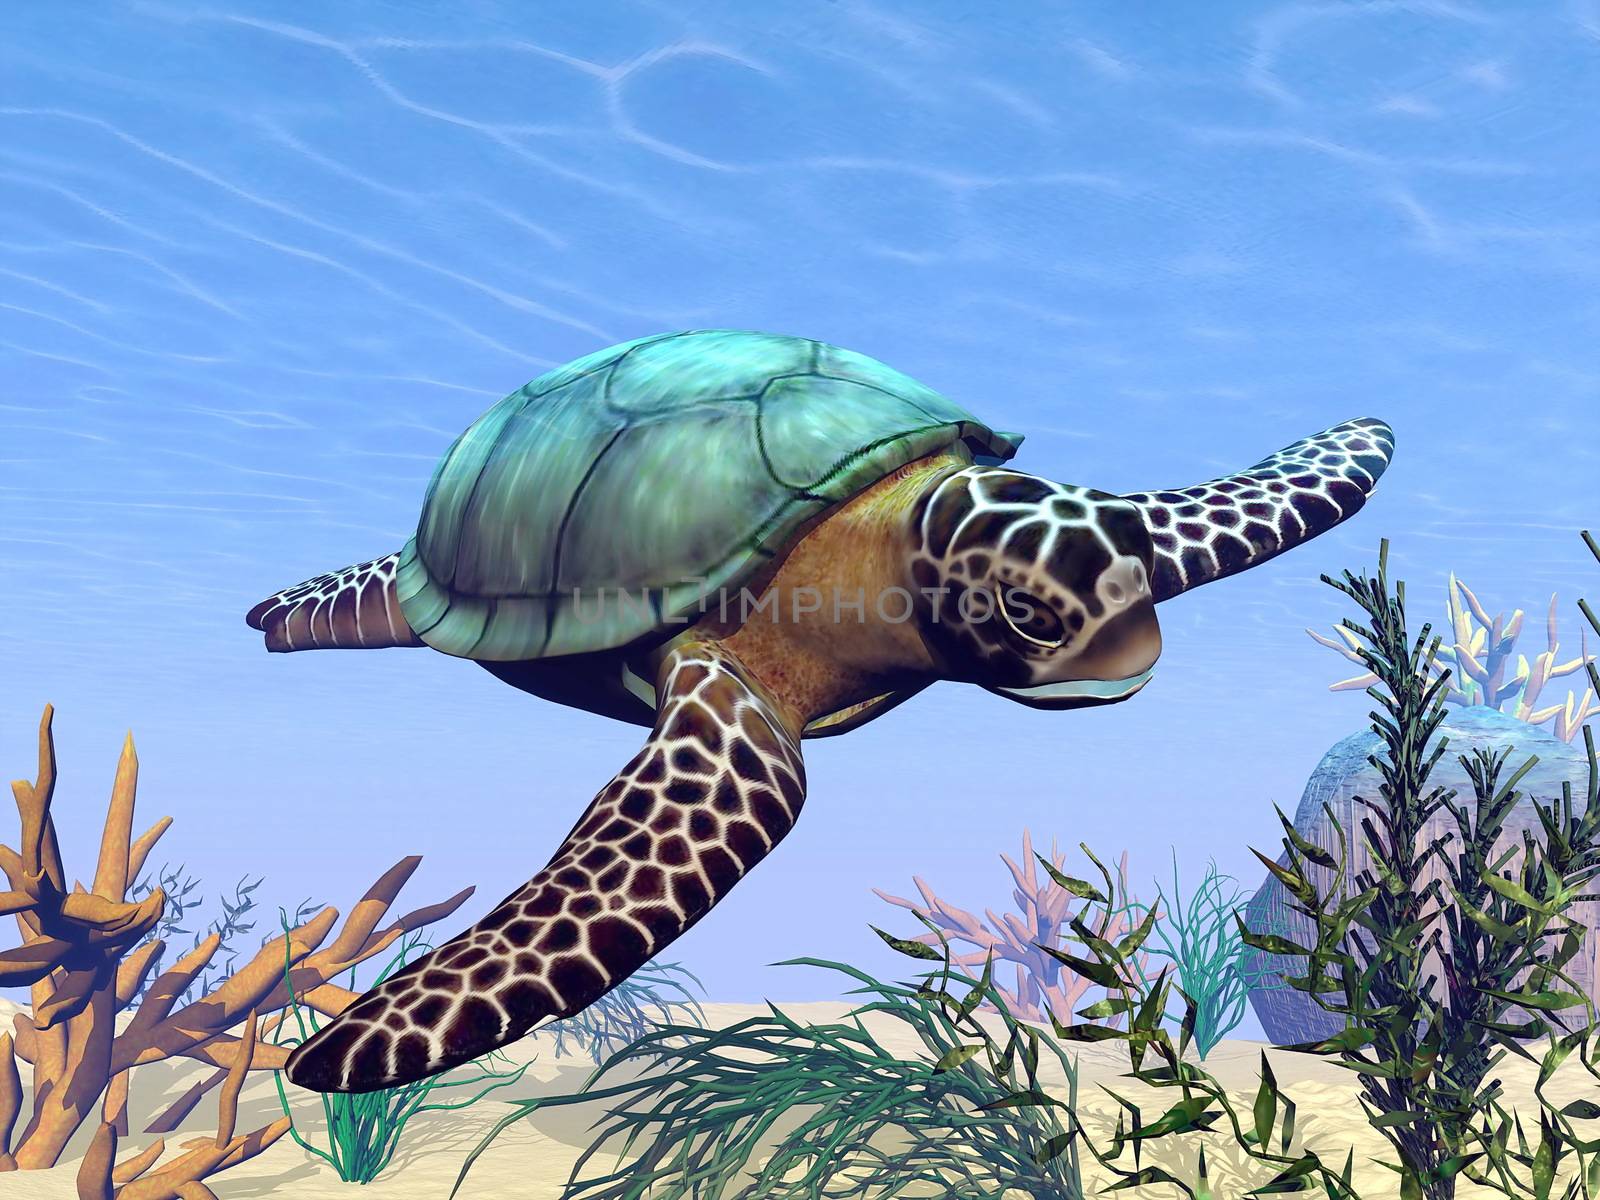 Beautiful sea turtle swimming in the sea among plants